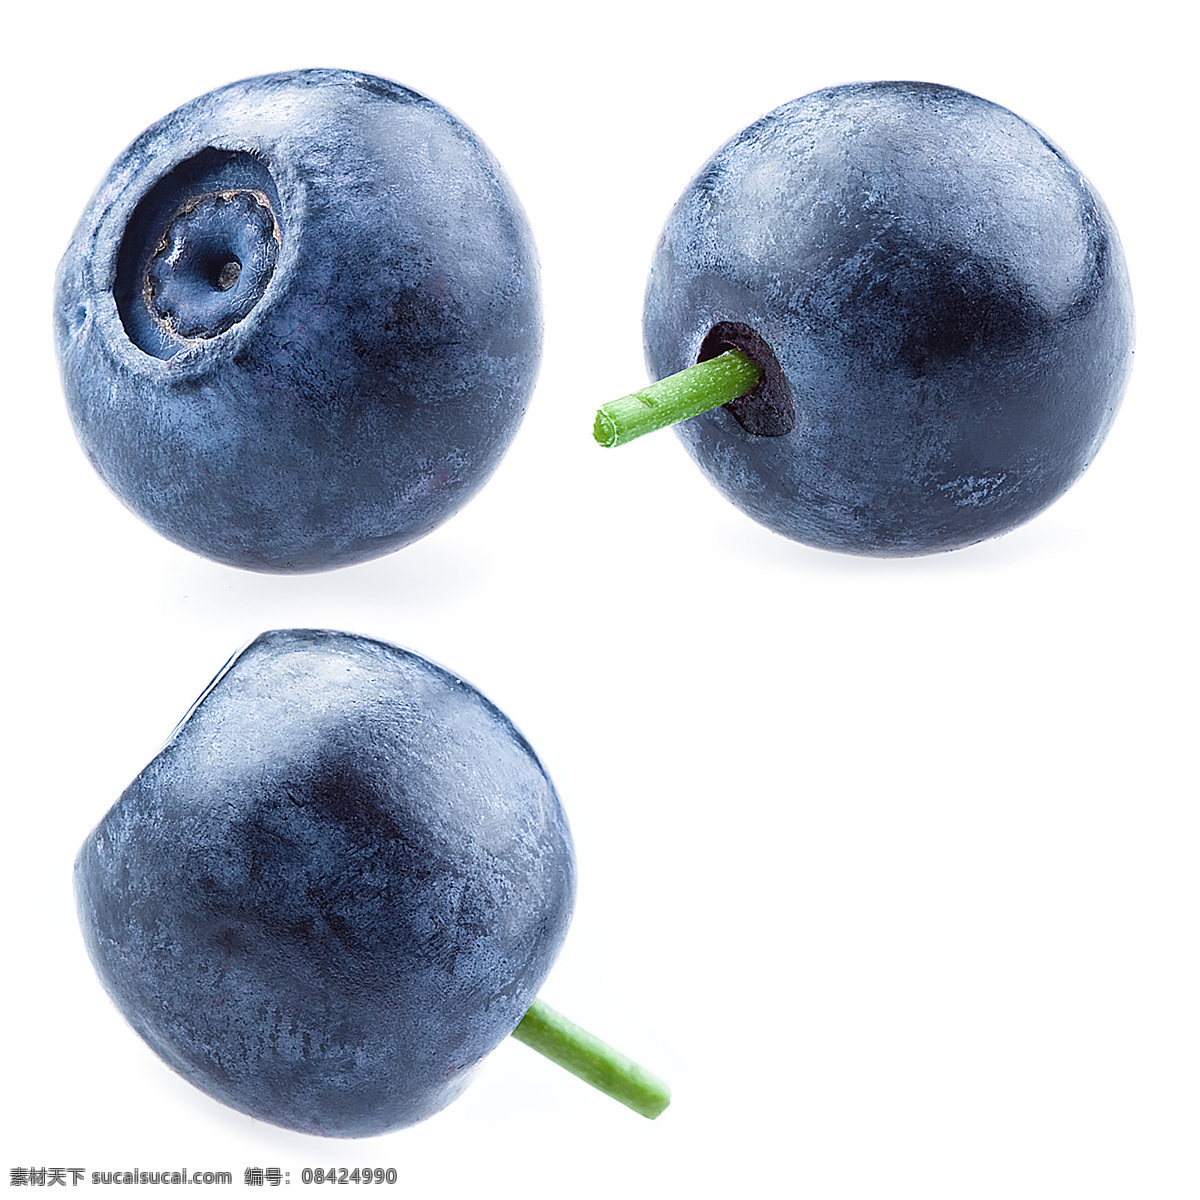 蓝莓 农业 饮食 食物 抗氧化物 维生素 水果 浆果 食品 美味 有机食品 生物世界